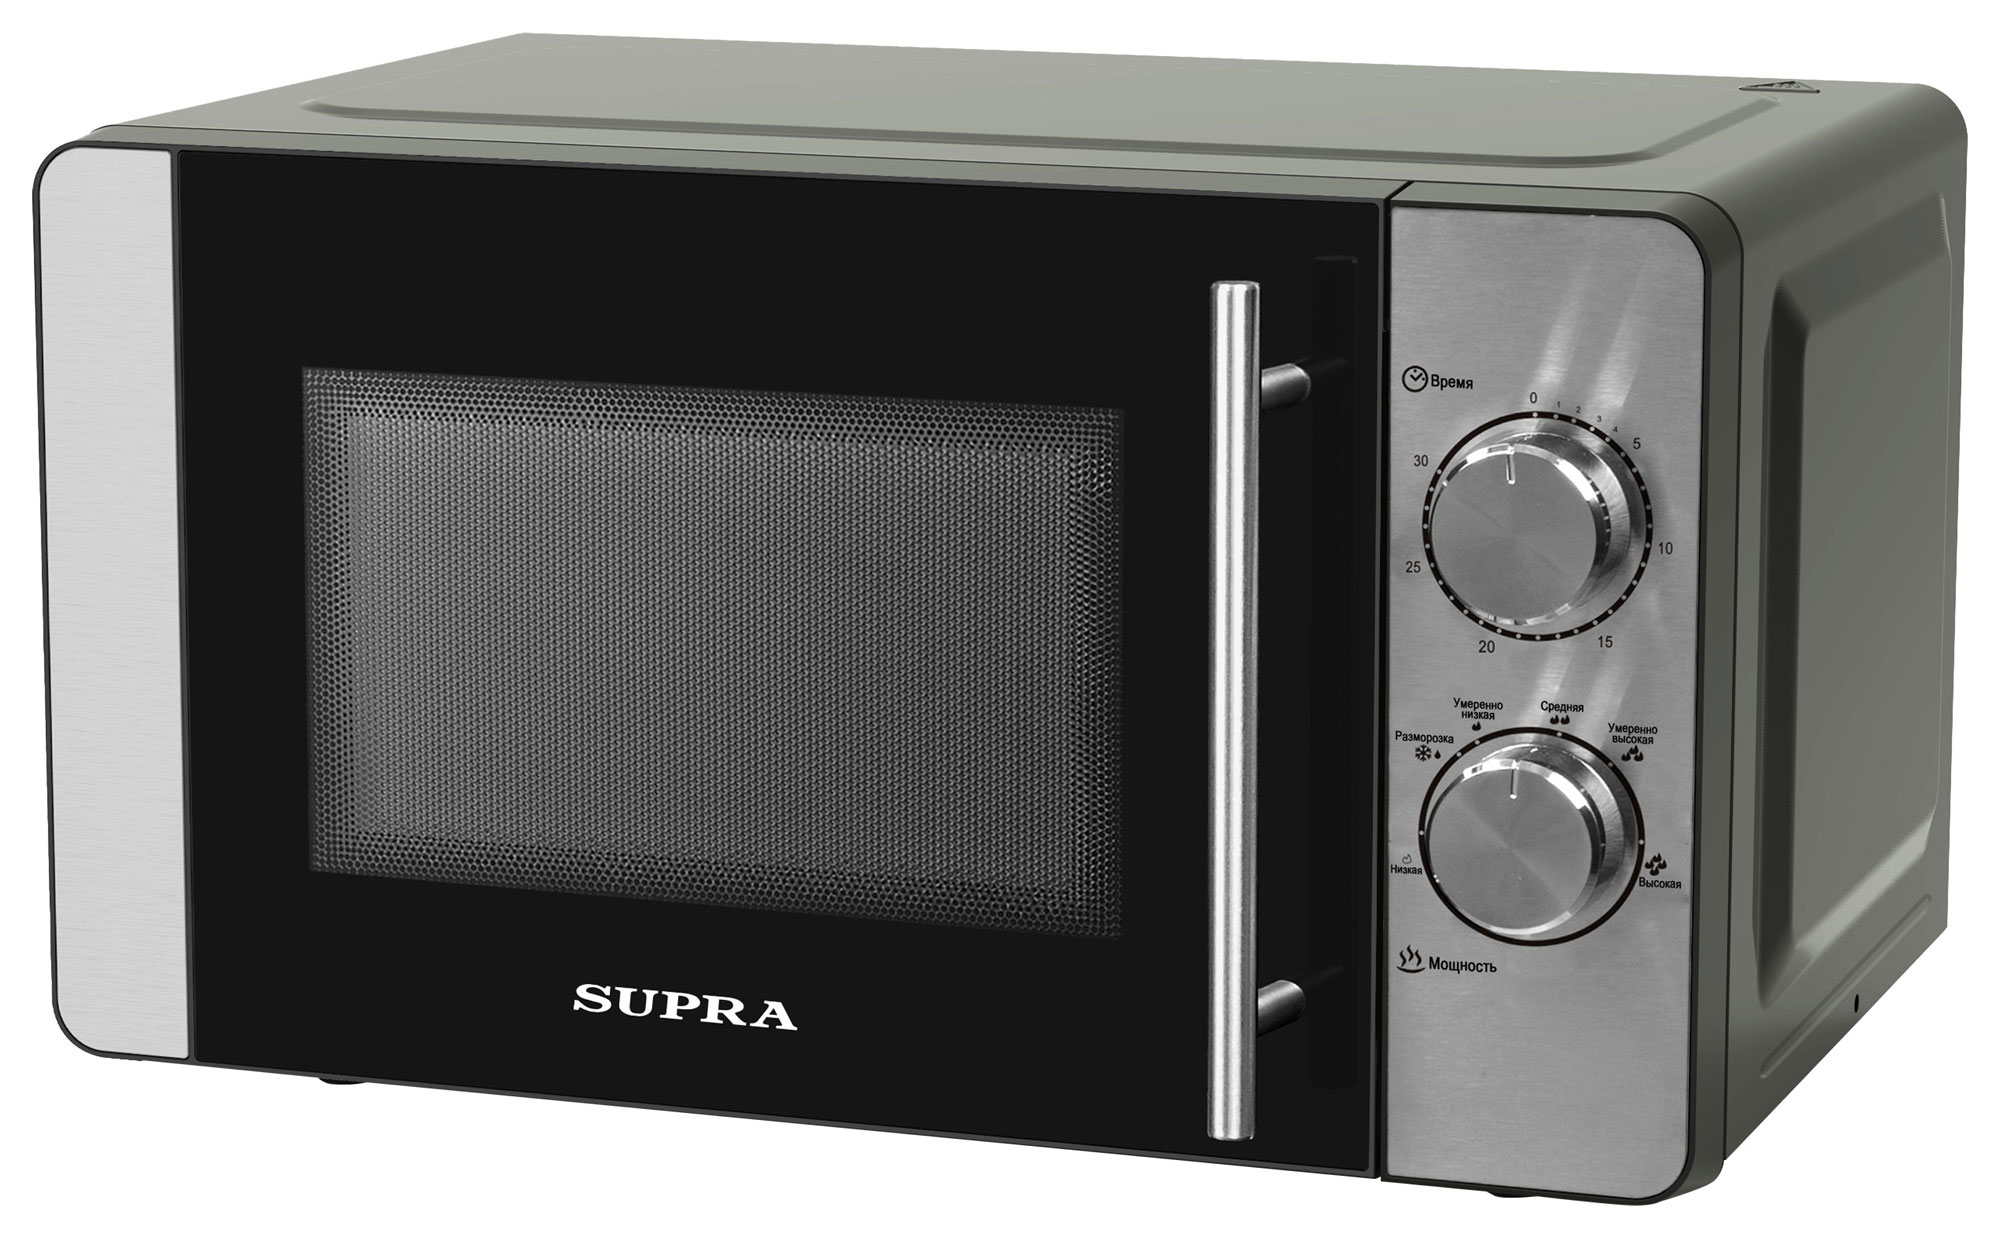 Картинка Микроволновая печь SUPRA 20MS22 по разумной цене купить в интернет магазине mall.su